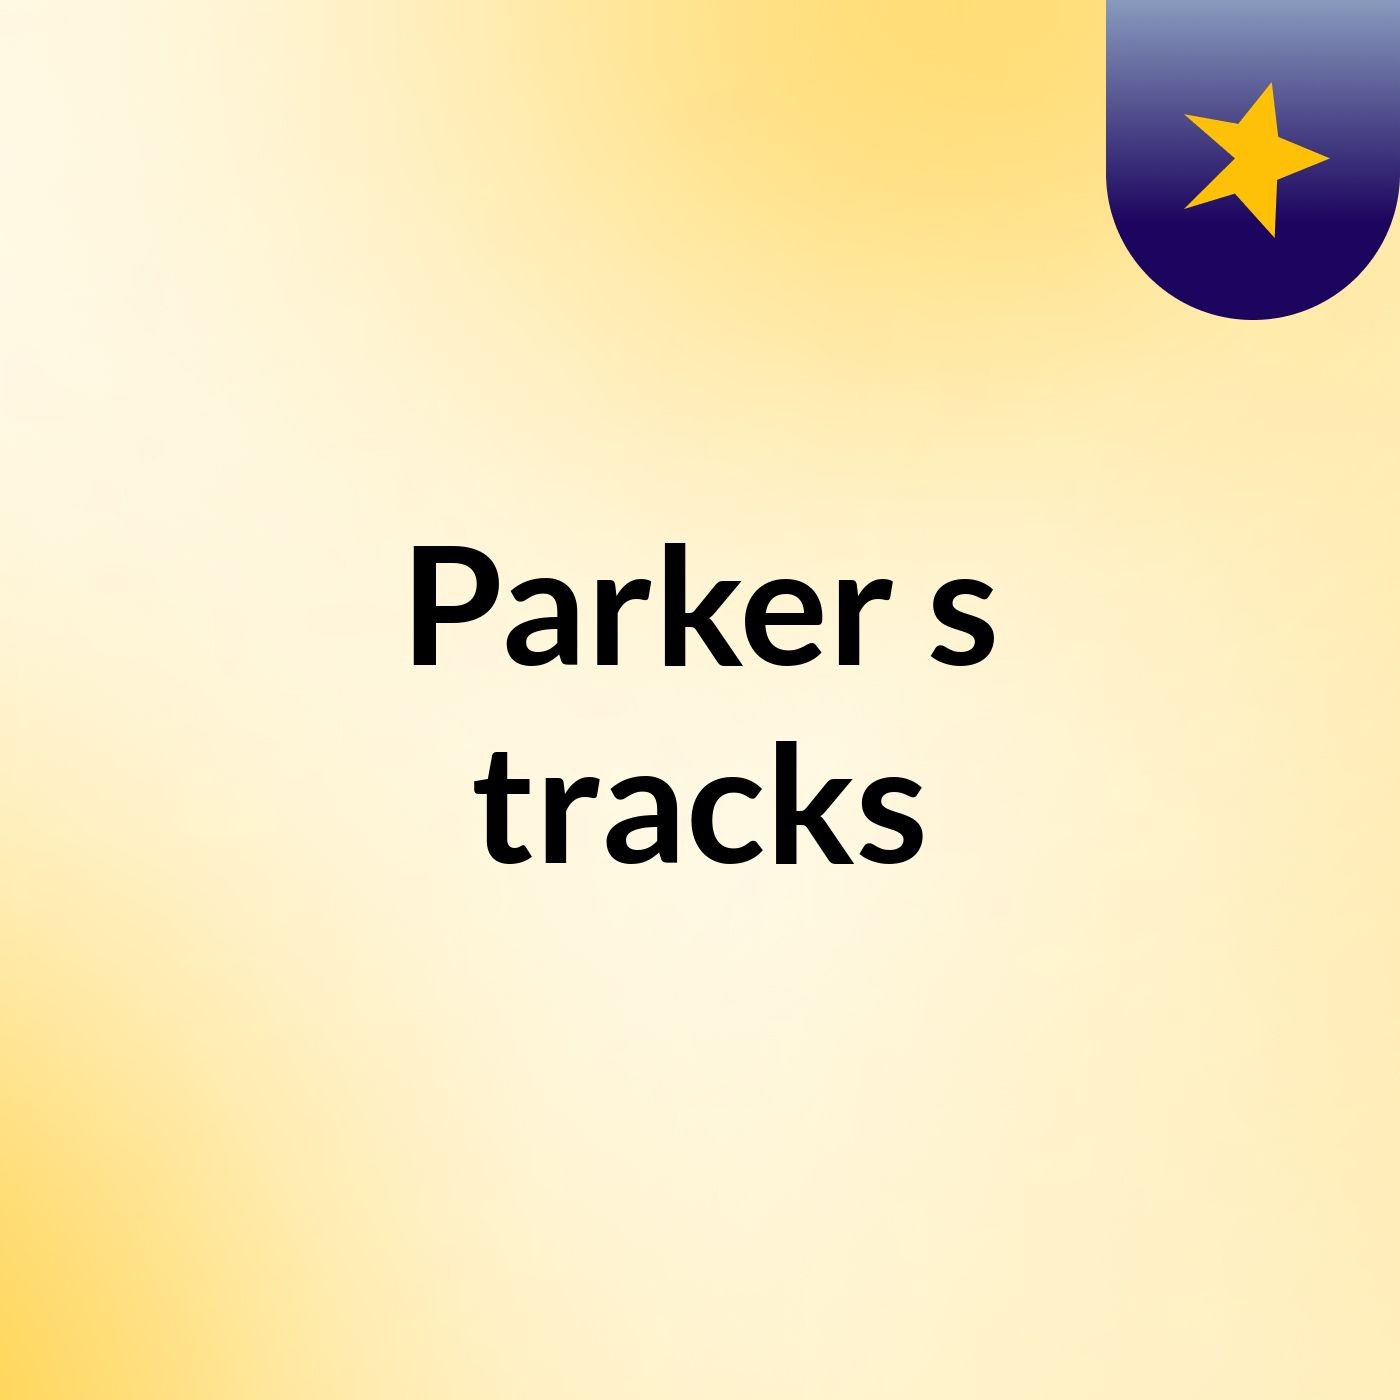 Parker's tracks